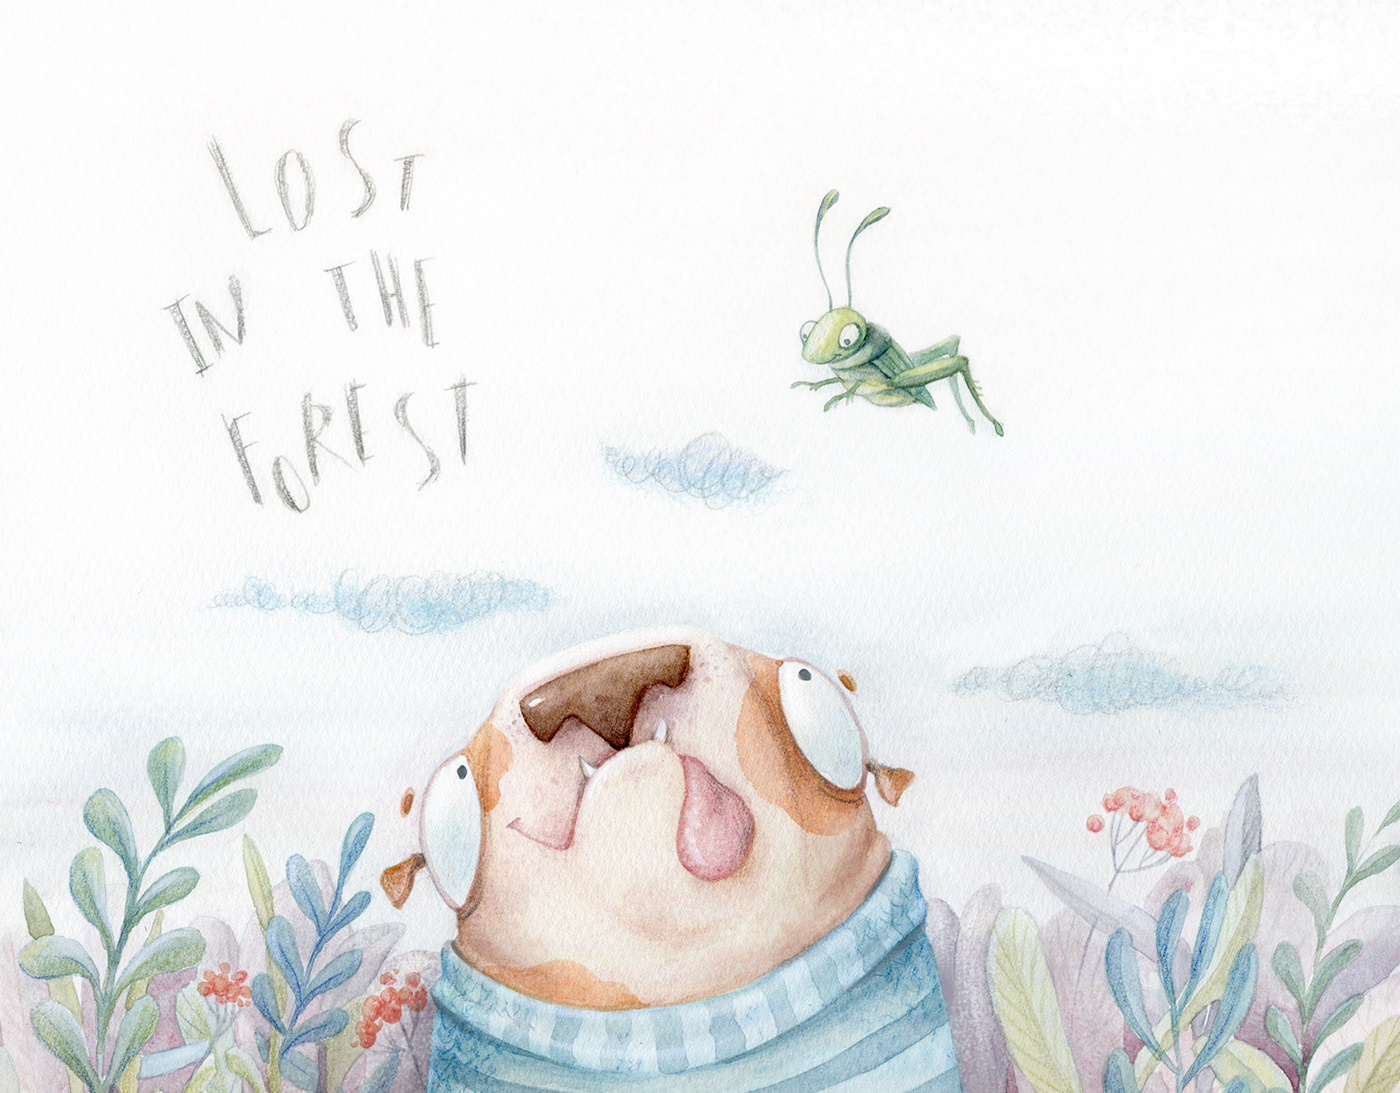 kris bez children's book krisbez illustration watercolor ILLUSTRATION  children's illustration dog forest